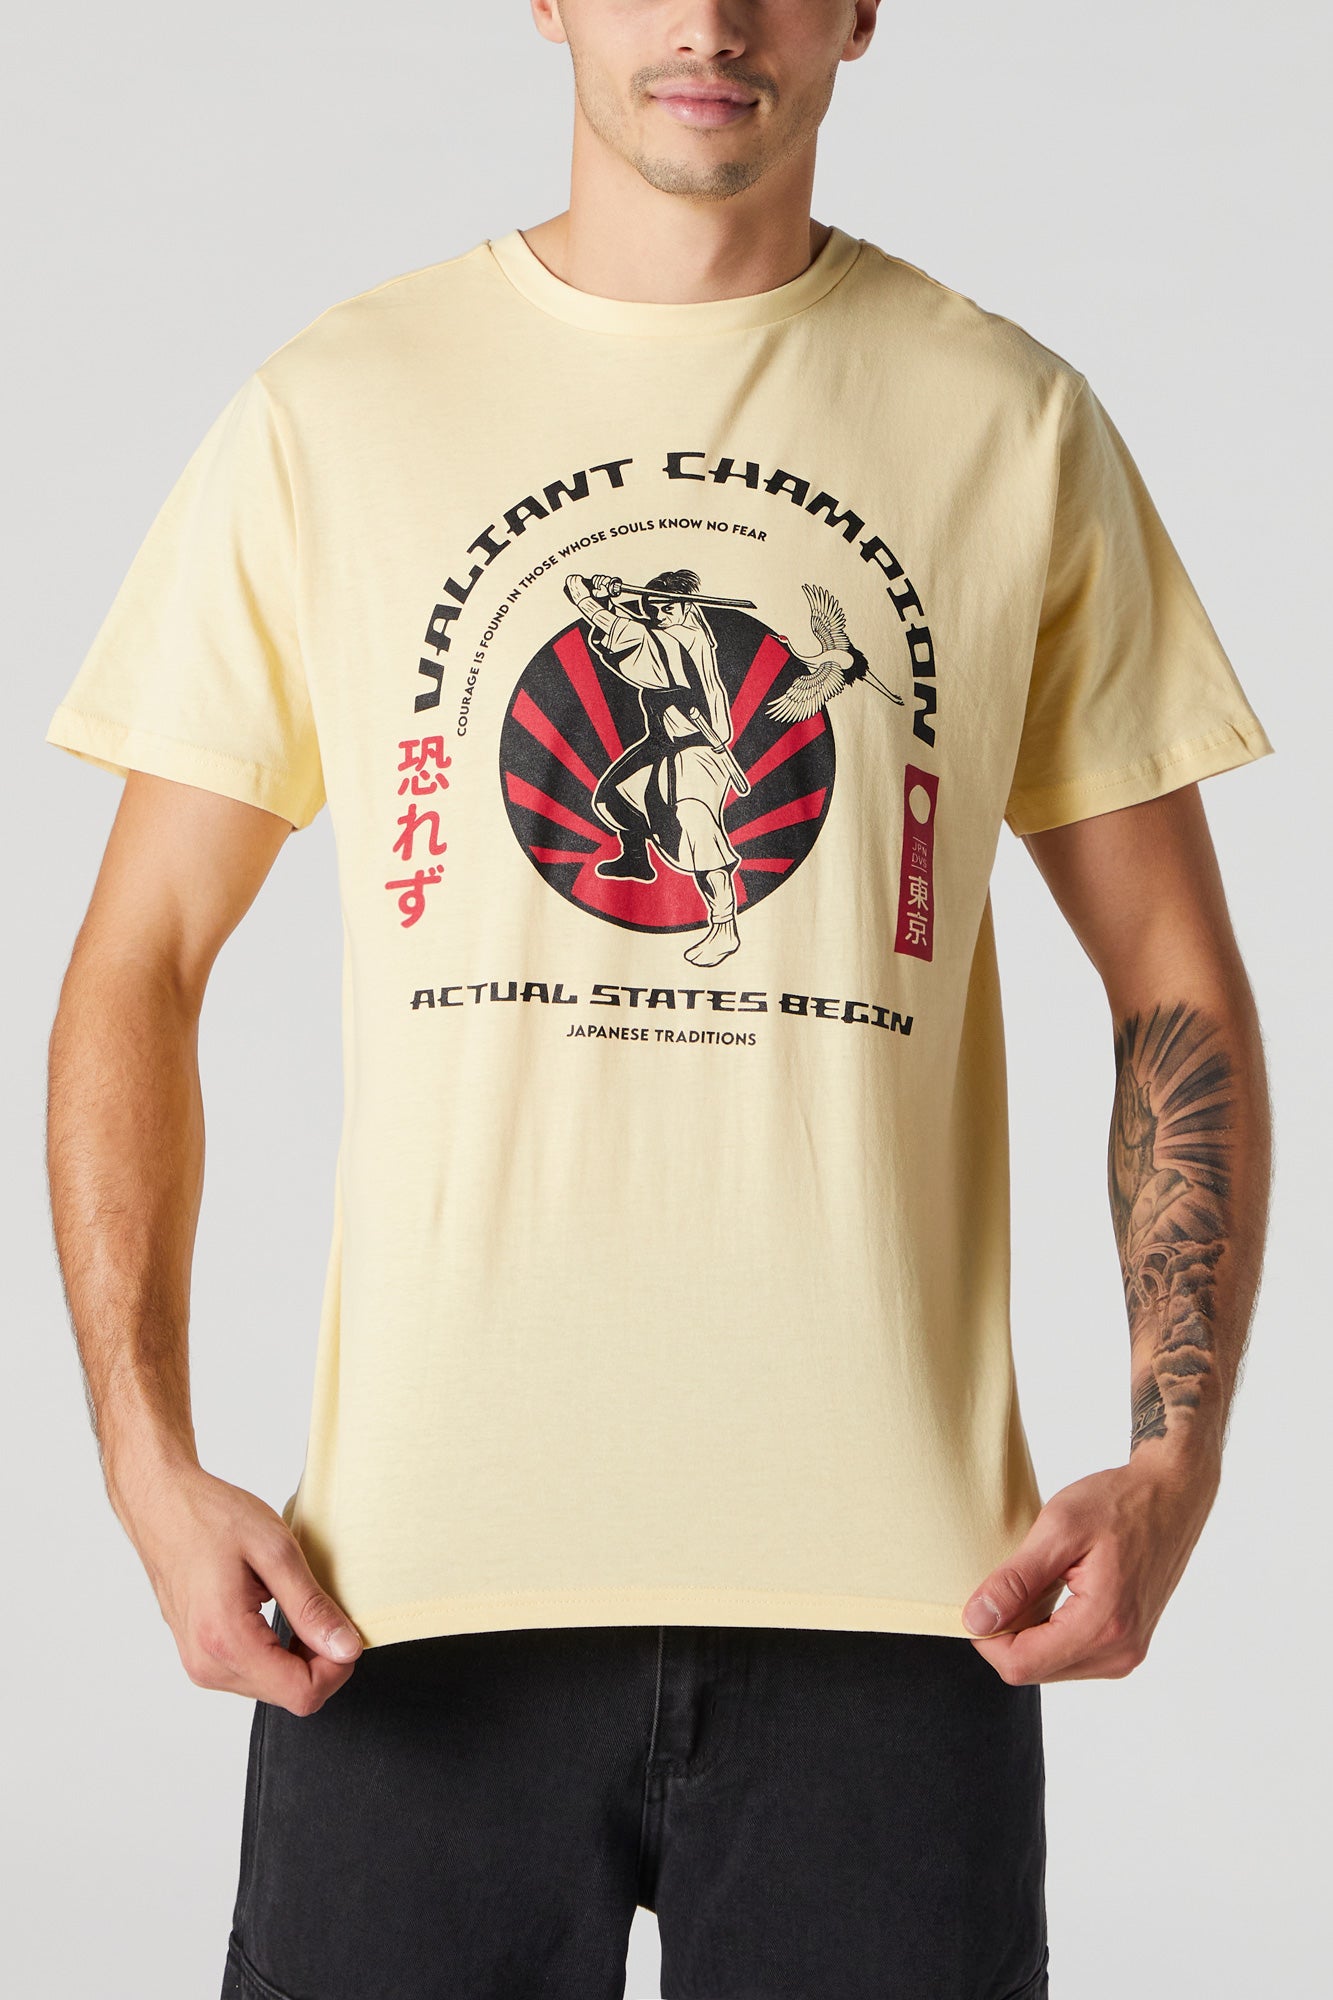 Samurai Champion Graphic T-Shirt